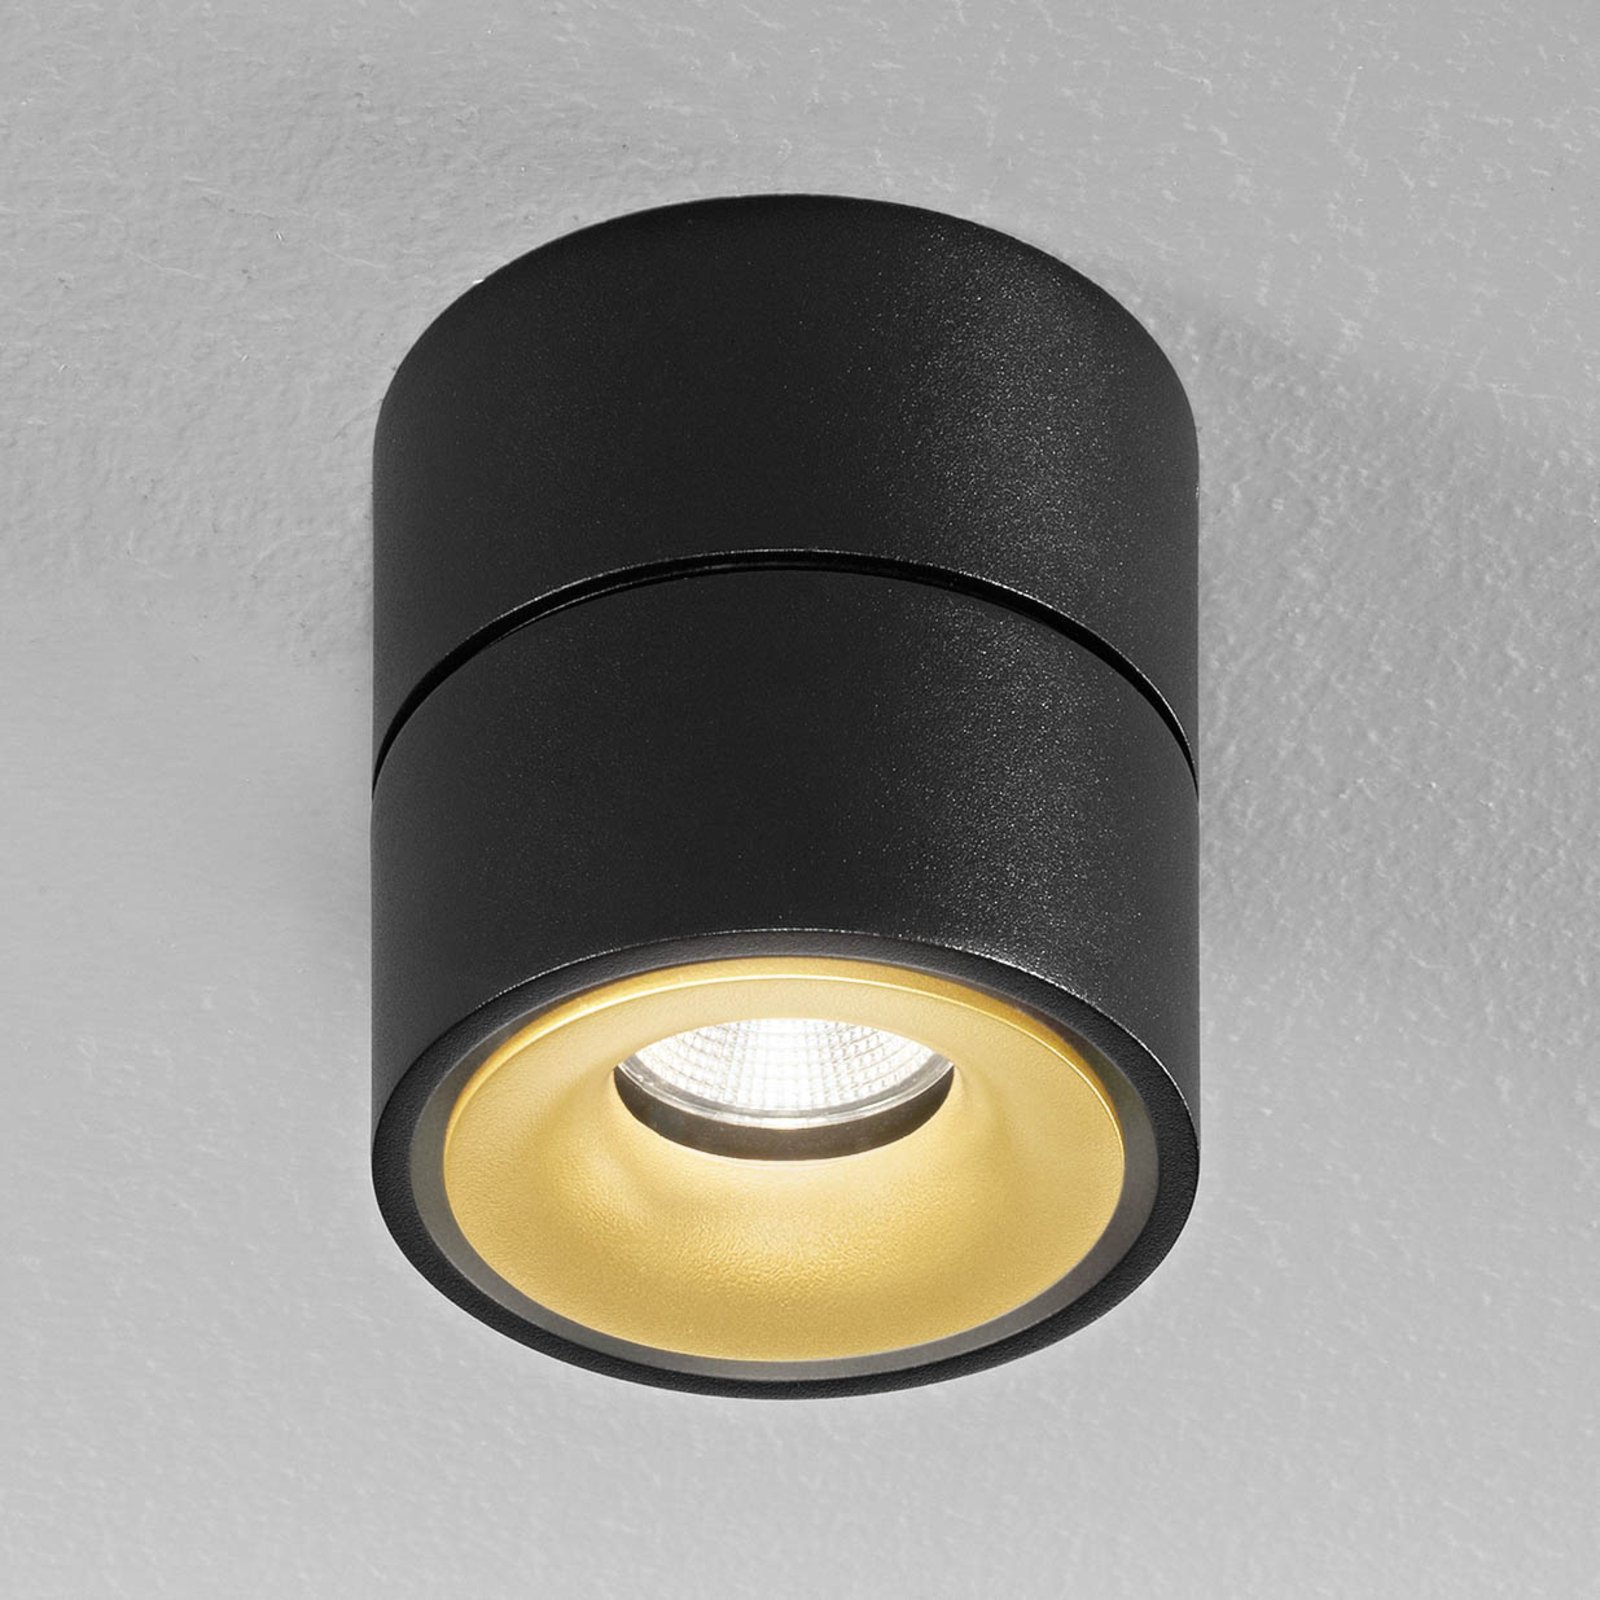 Egger Clippo S LED downlight, black/gold